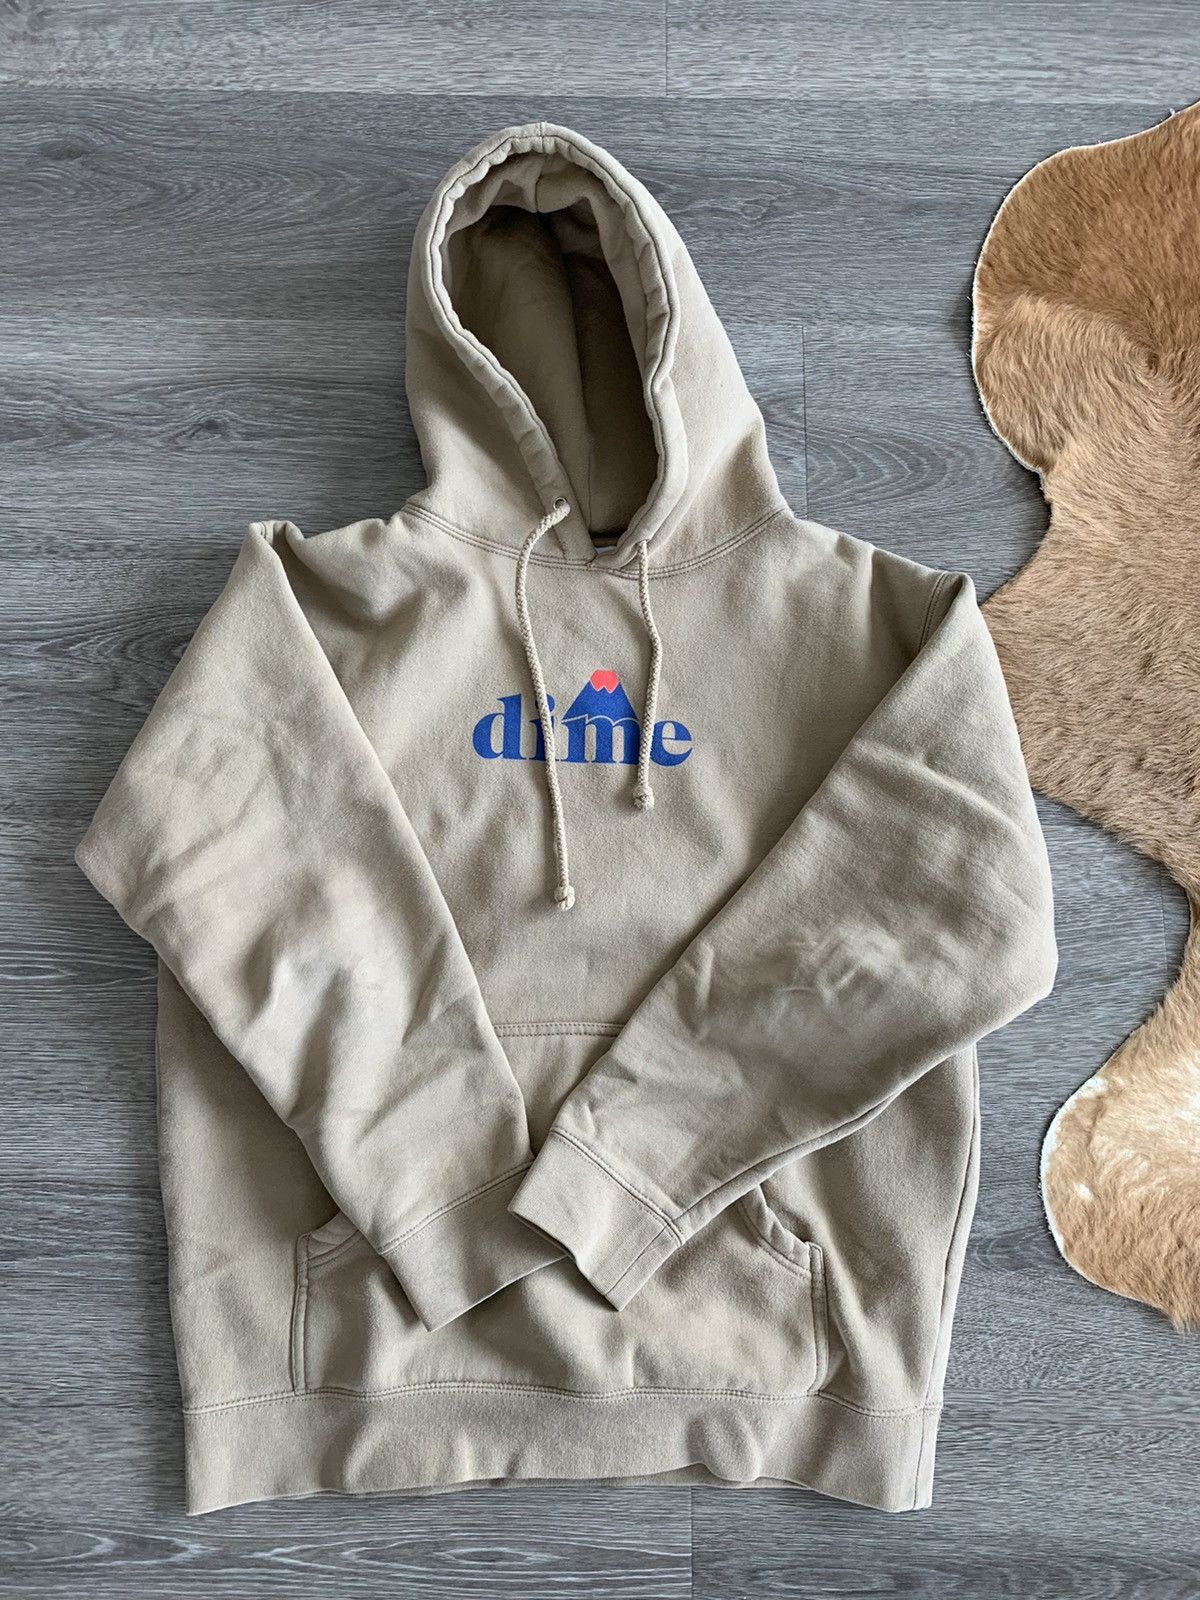 Dime Dime mountain logo hoodie | Grailed